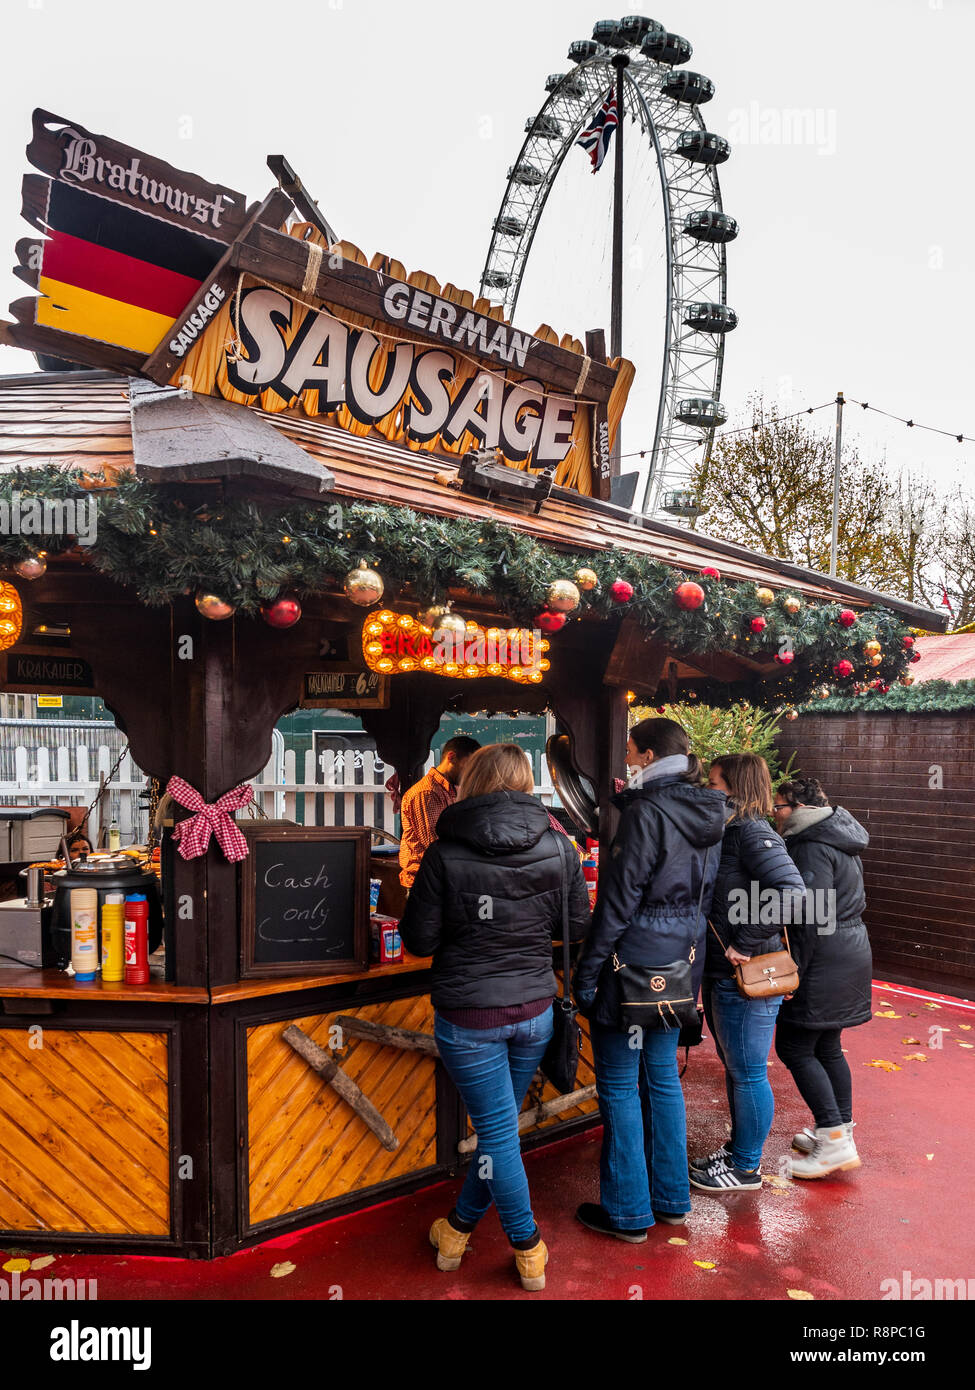 Salchicha alemana puesto de comida en el mercado de invierno, Southbank, Londres, Reino Unido. Foto de stock